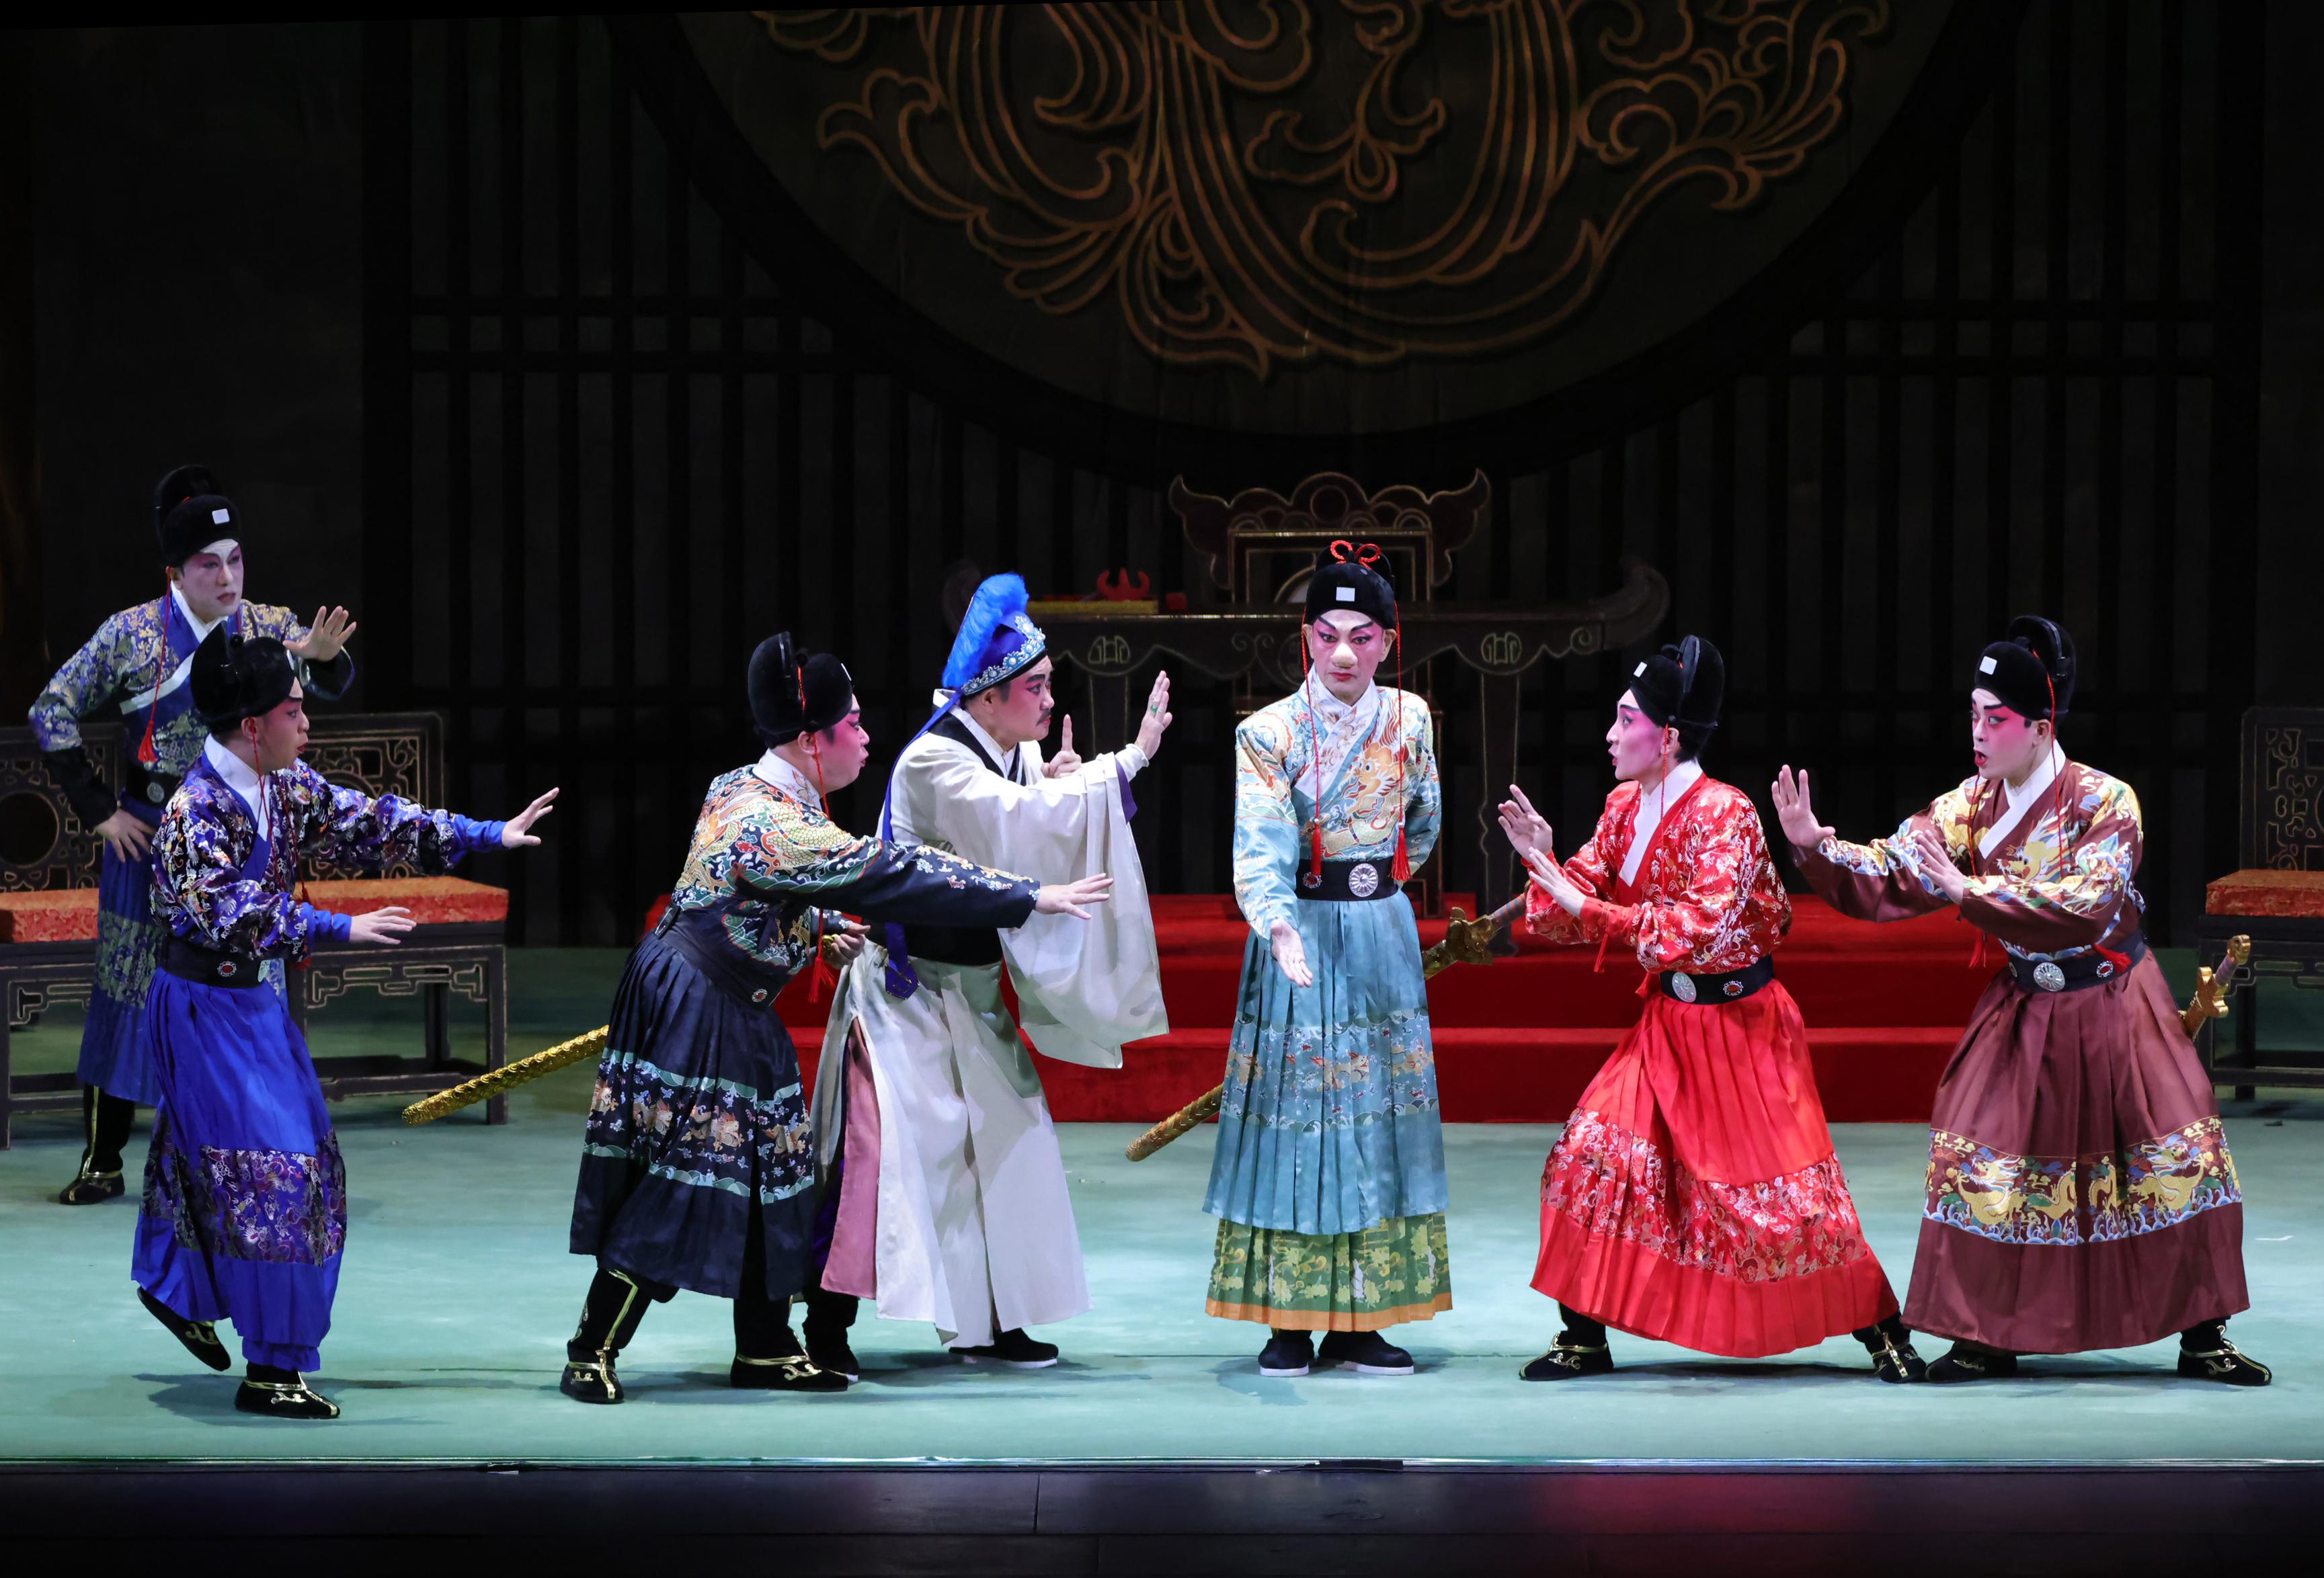 新编粤剧《大鼻子情圣》为首届「中华文化节」戏曲演出打响头锣。图示新编粤剧《大鼻子情圣》的演出场景。